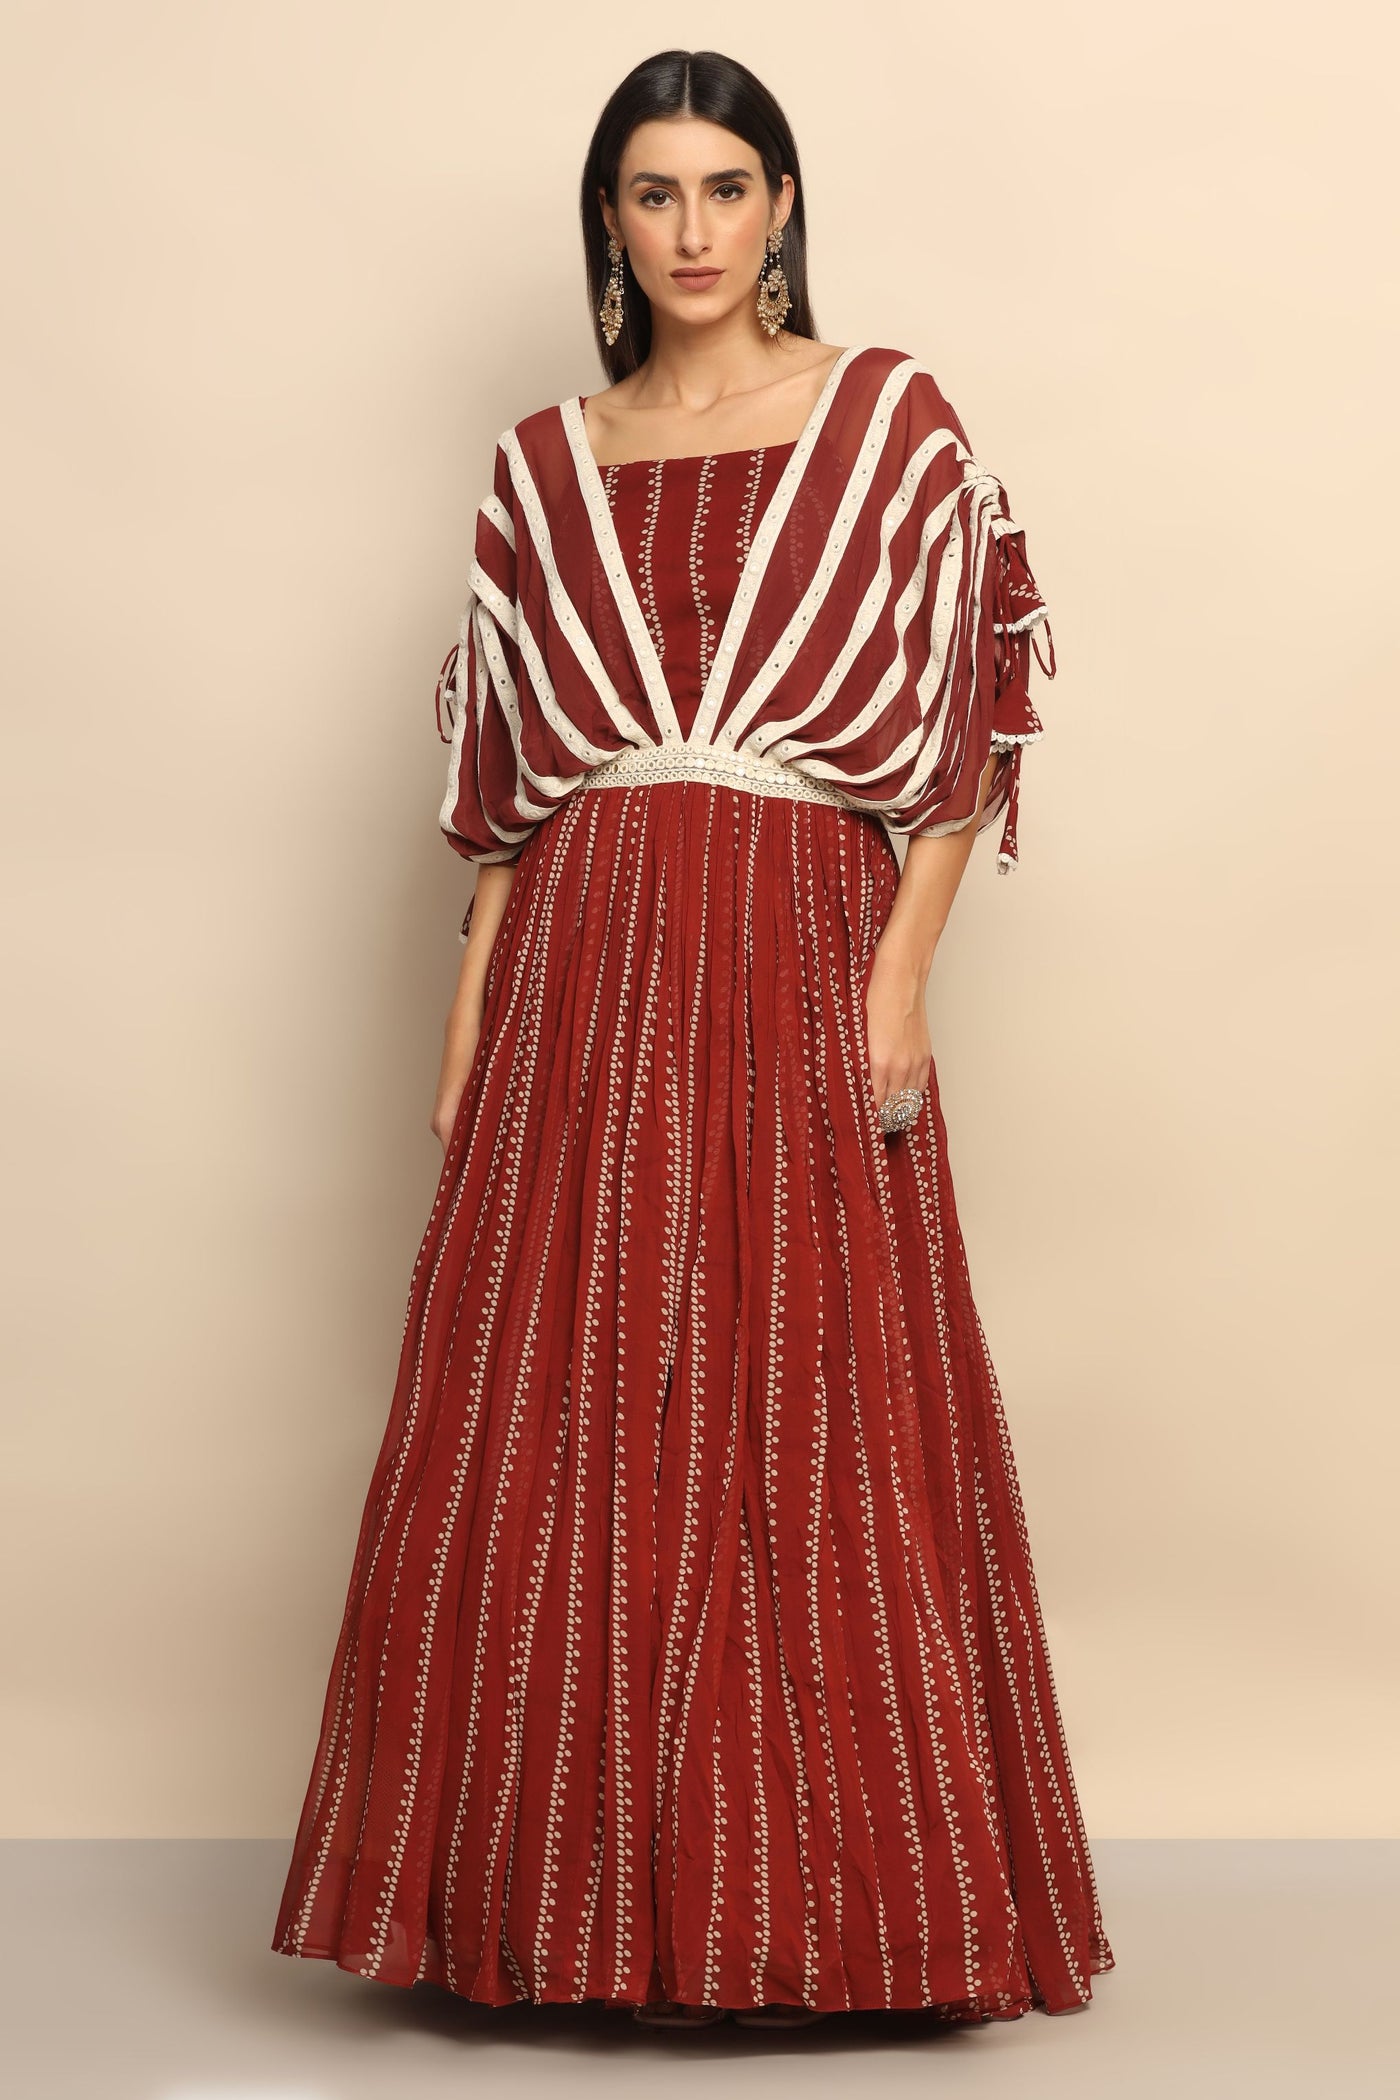 Mystique Brown Georgette Dress with Mirror Thread Work